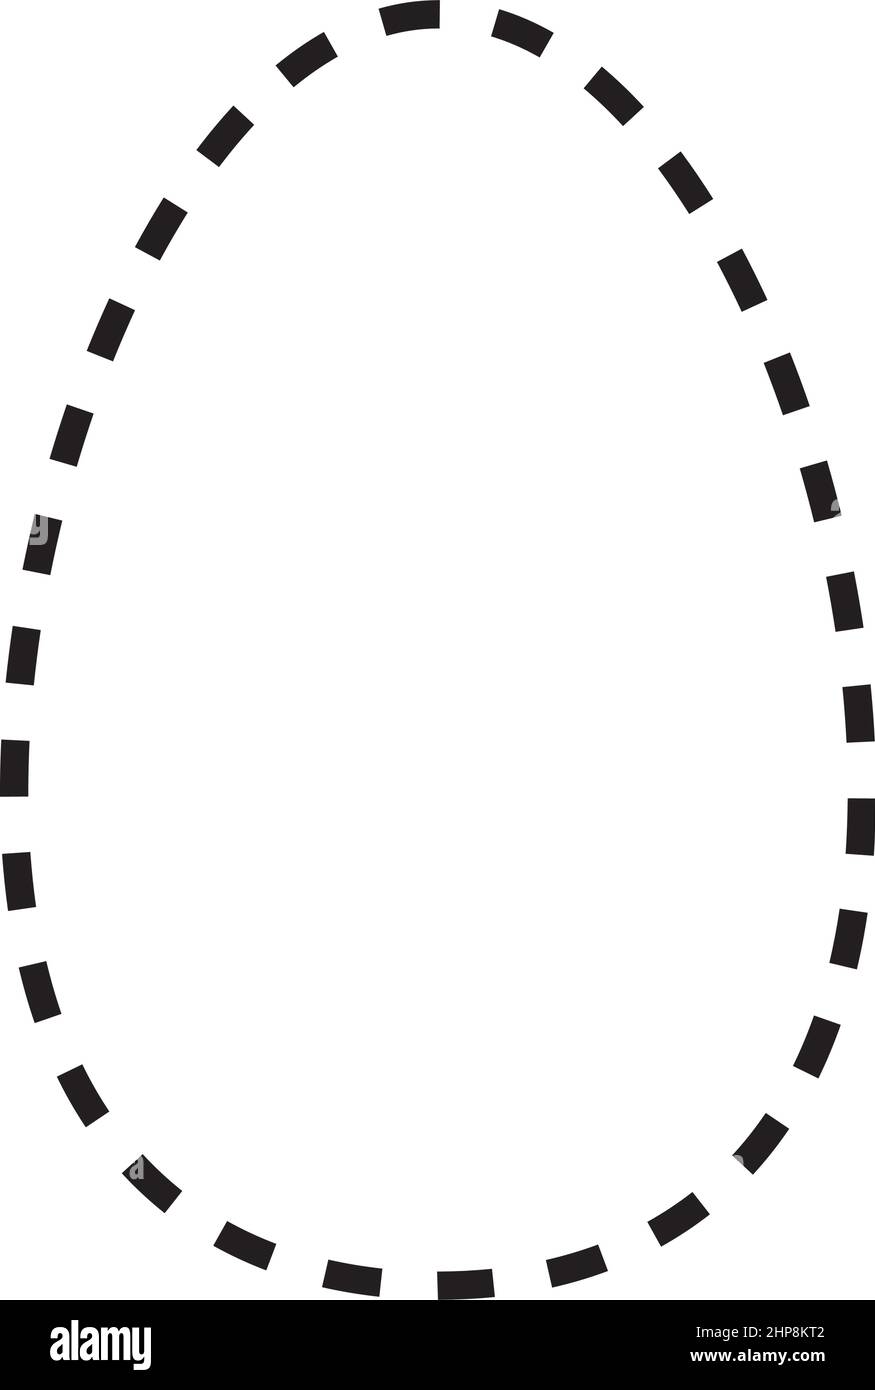 Ovales gestricheltes Symbol Vektor-Symbol für kreatives Grafikdesign ui-Element in einer Piktogrammdarstellung Stock Vektor